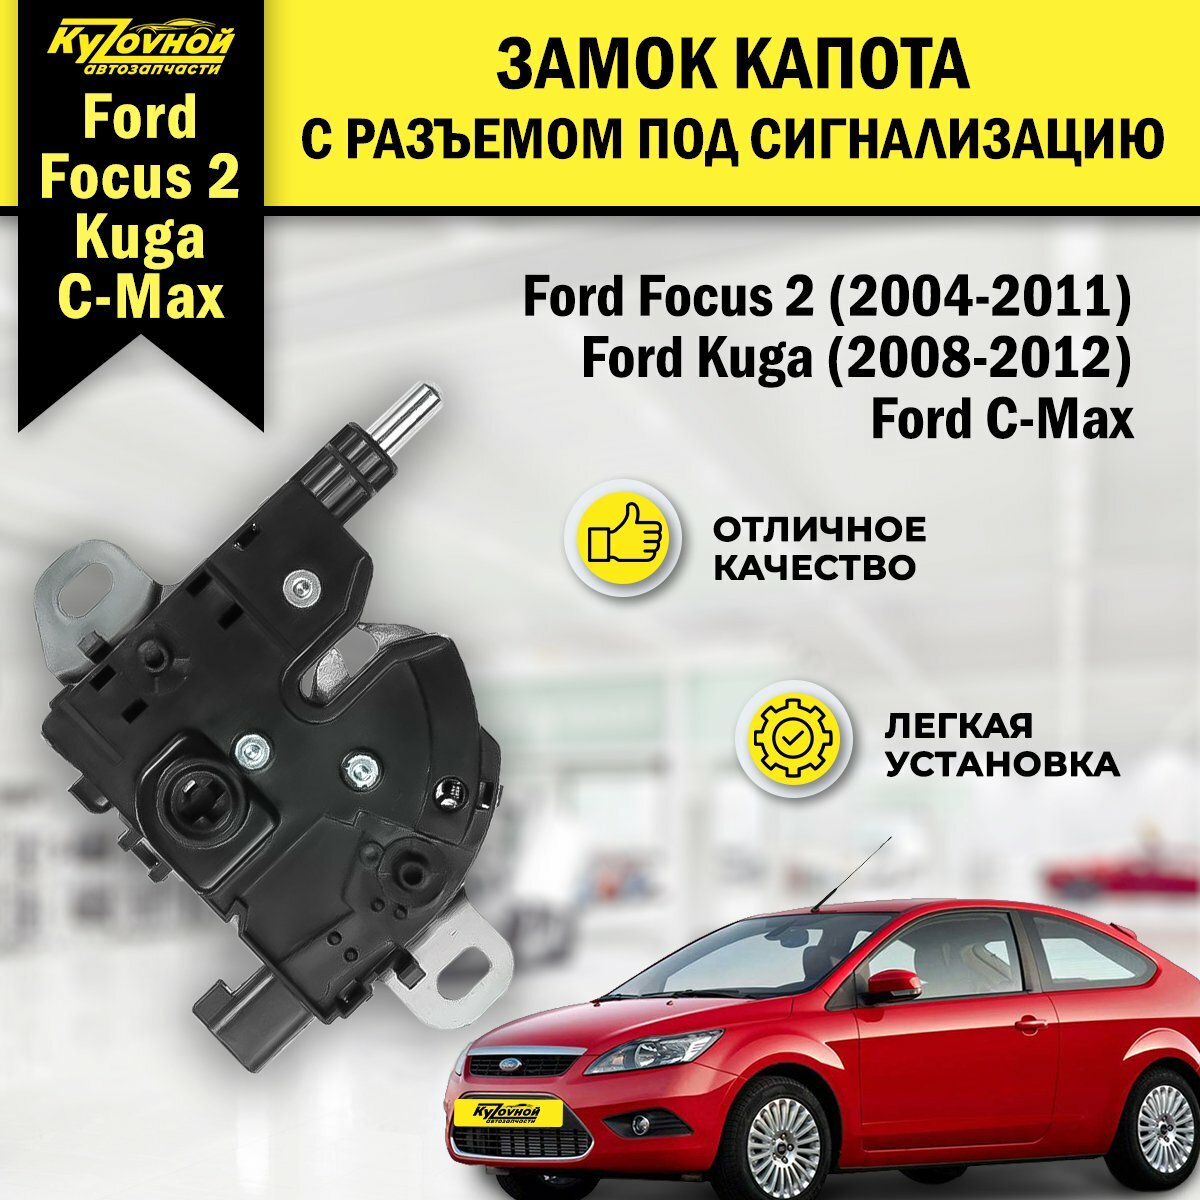 Замок капота Ford Focus 2 (2004-2011), Ford Kuga (2008-2012) с разъемом под сигнализацию